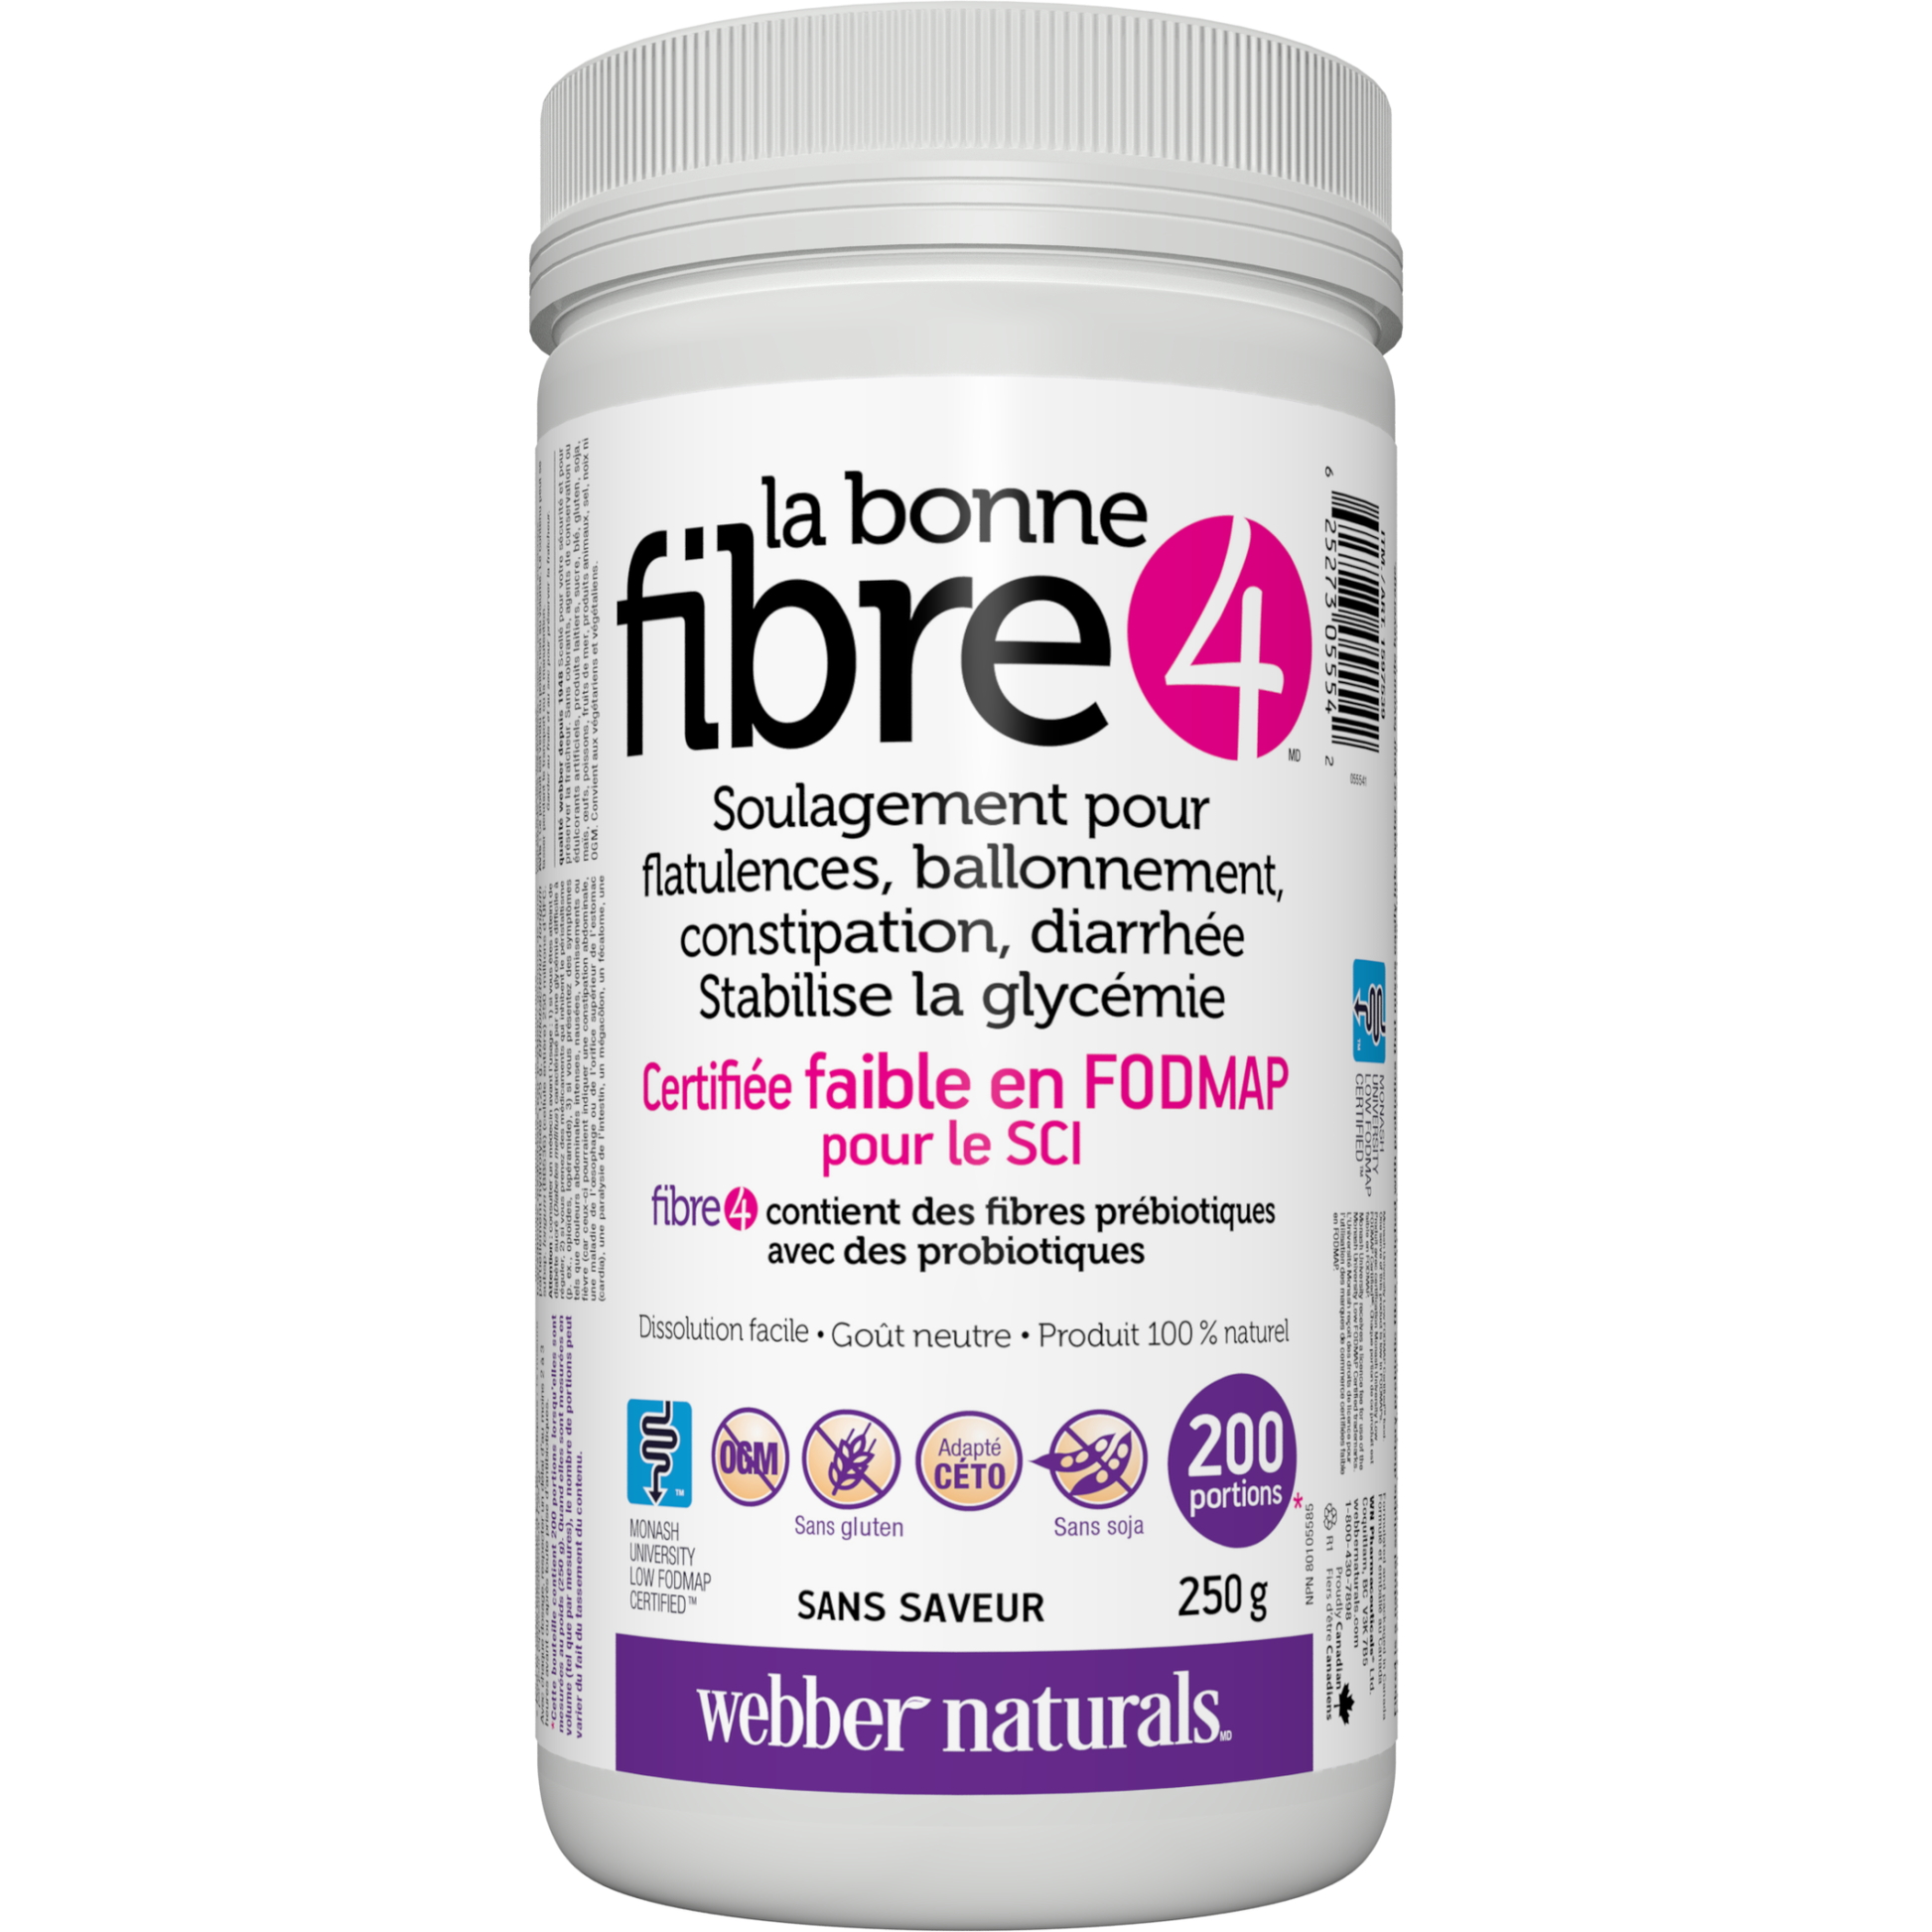 La bonne fibre4 for Webber Naturals|v|hi-res|WN5554